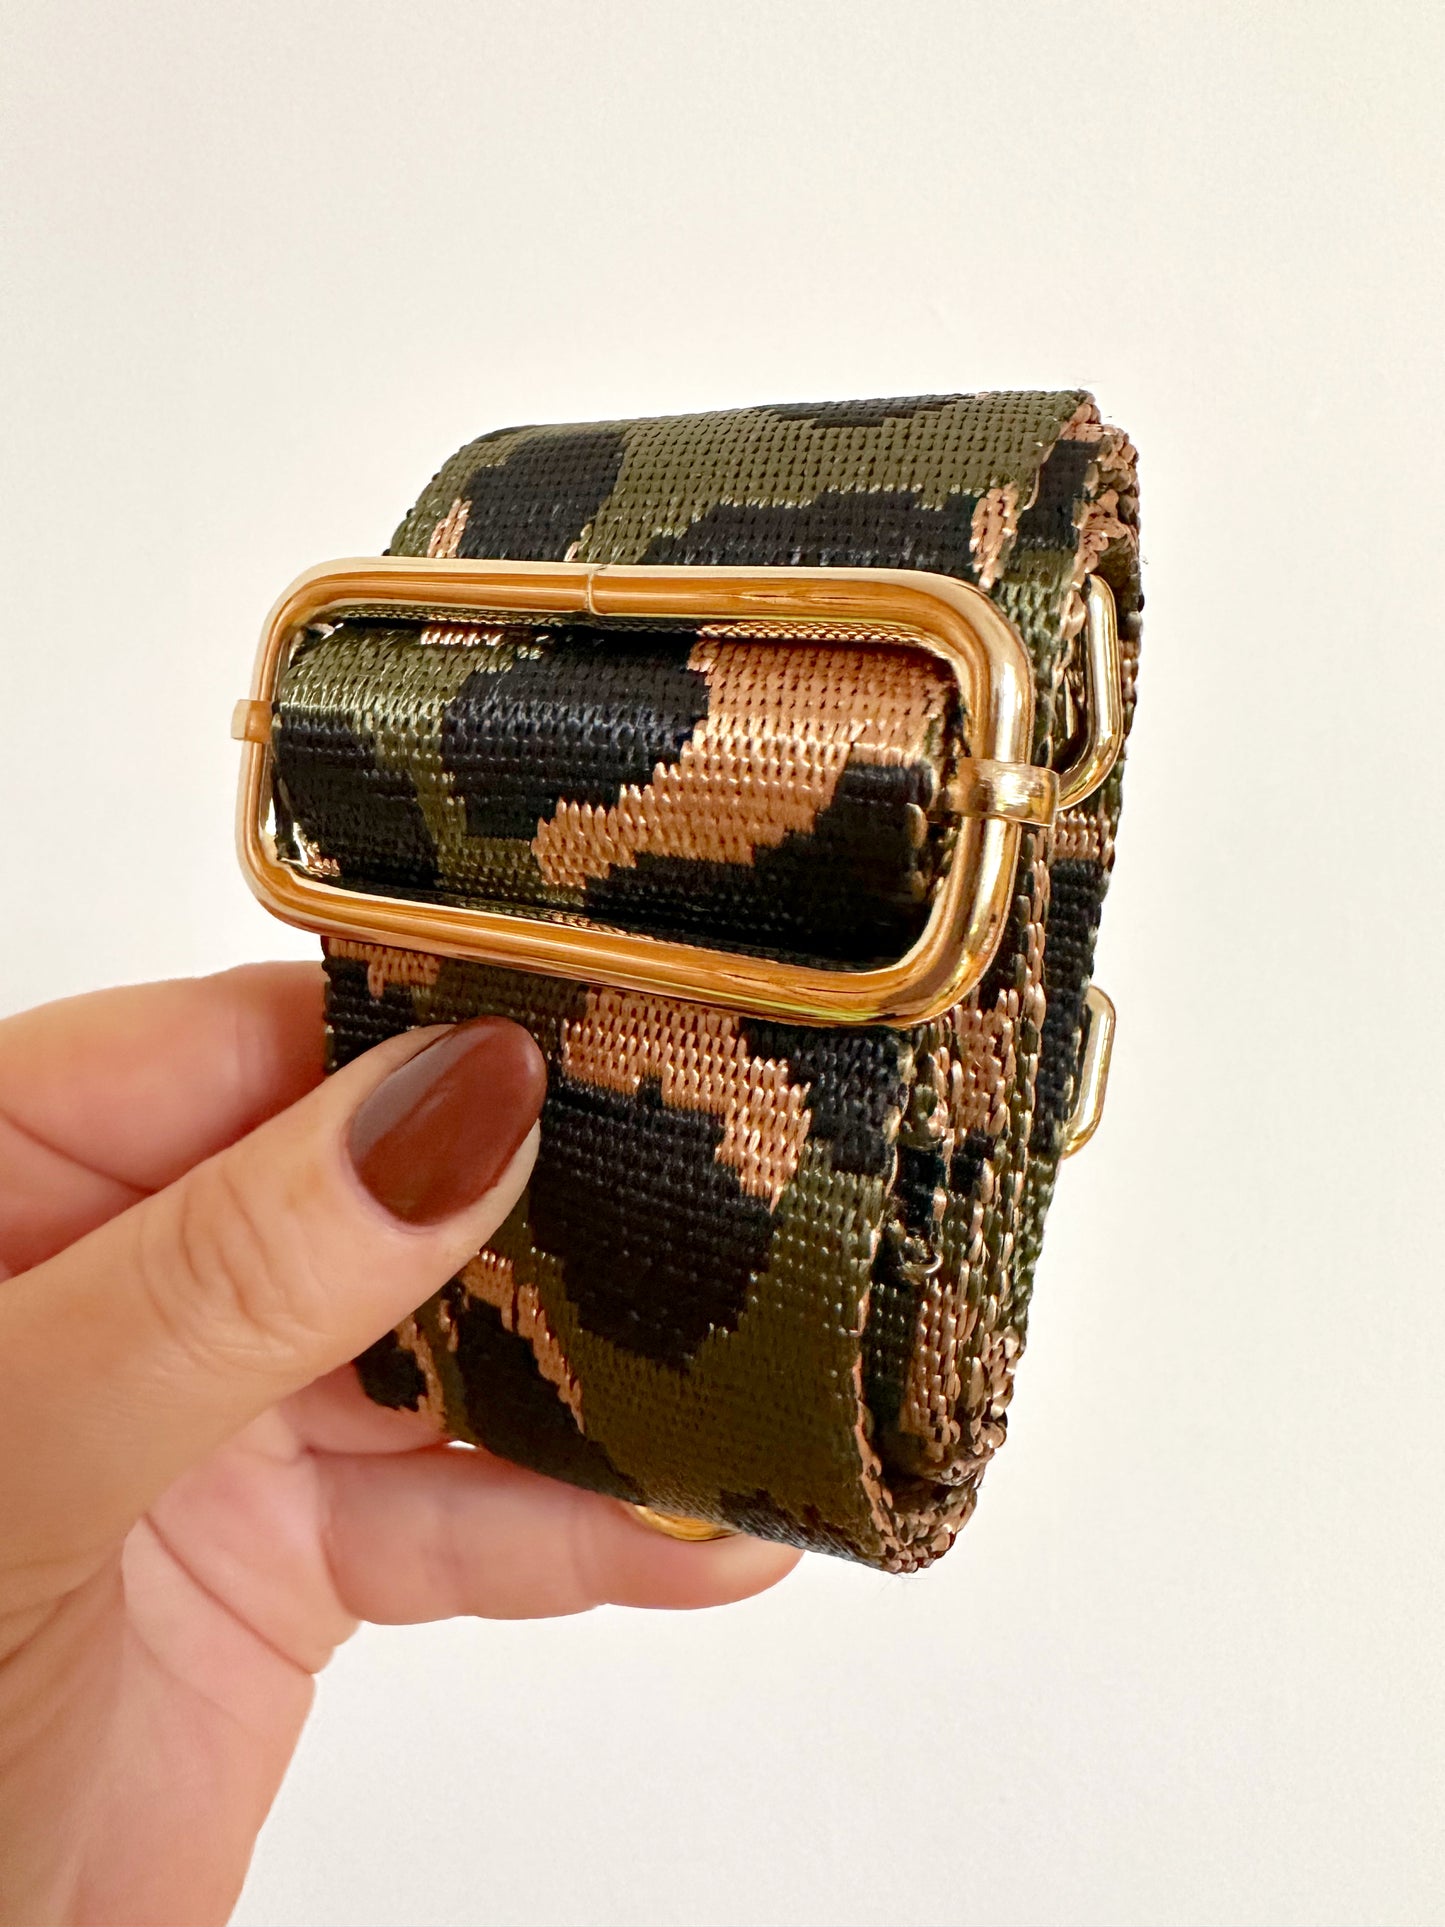 Amber Bag Strap - Olive & Gold Leopard Print